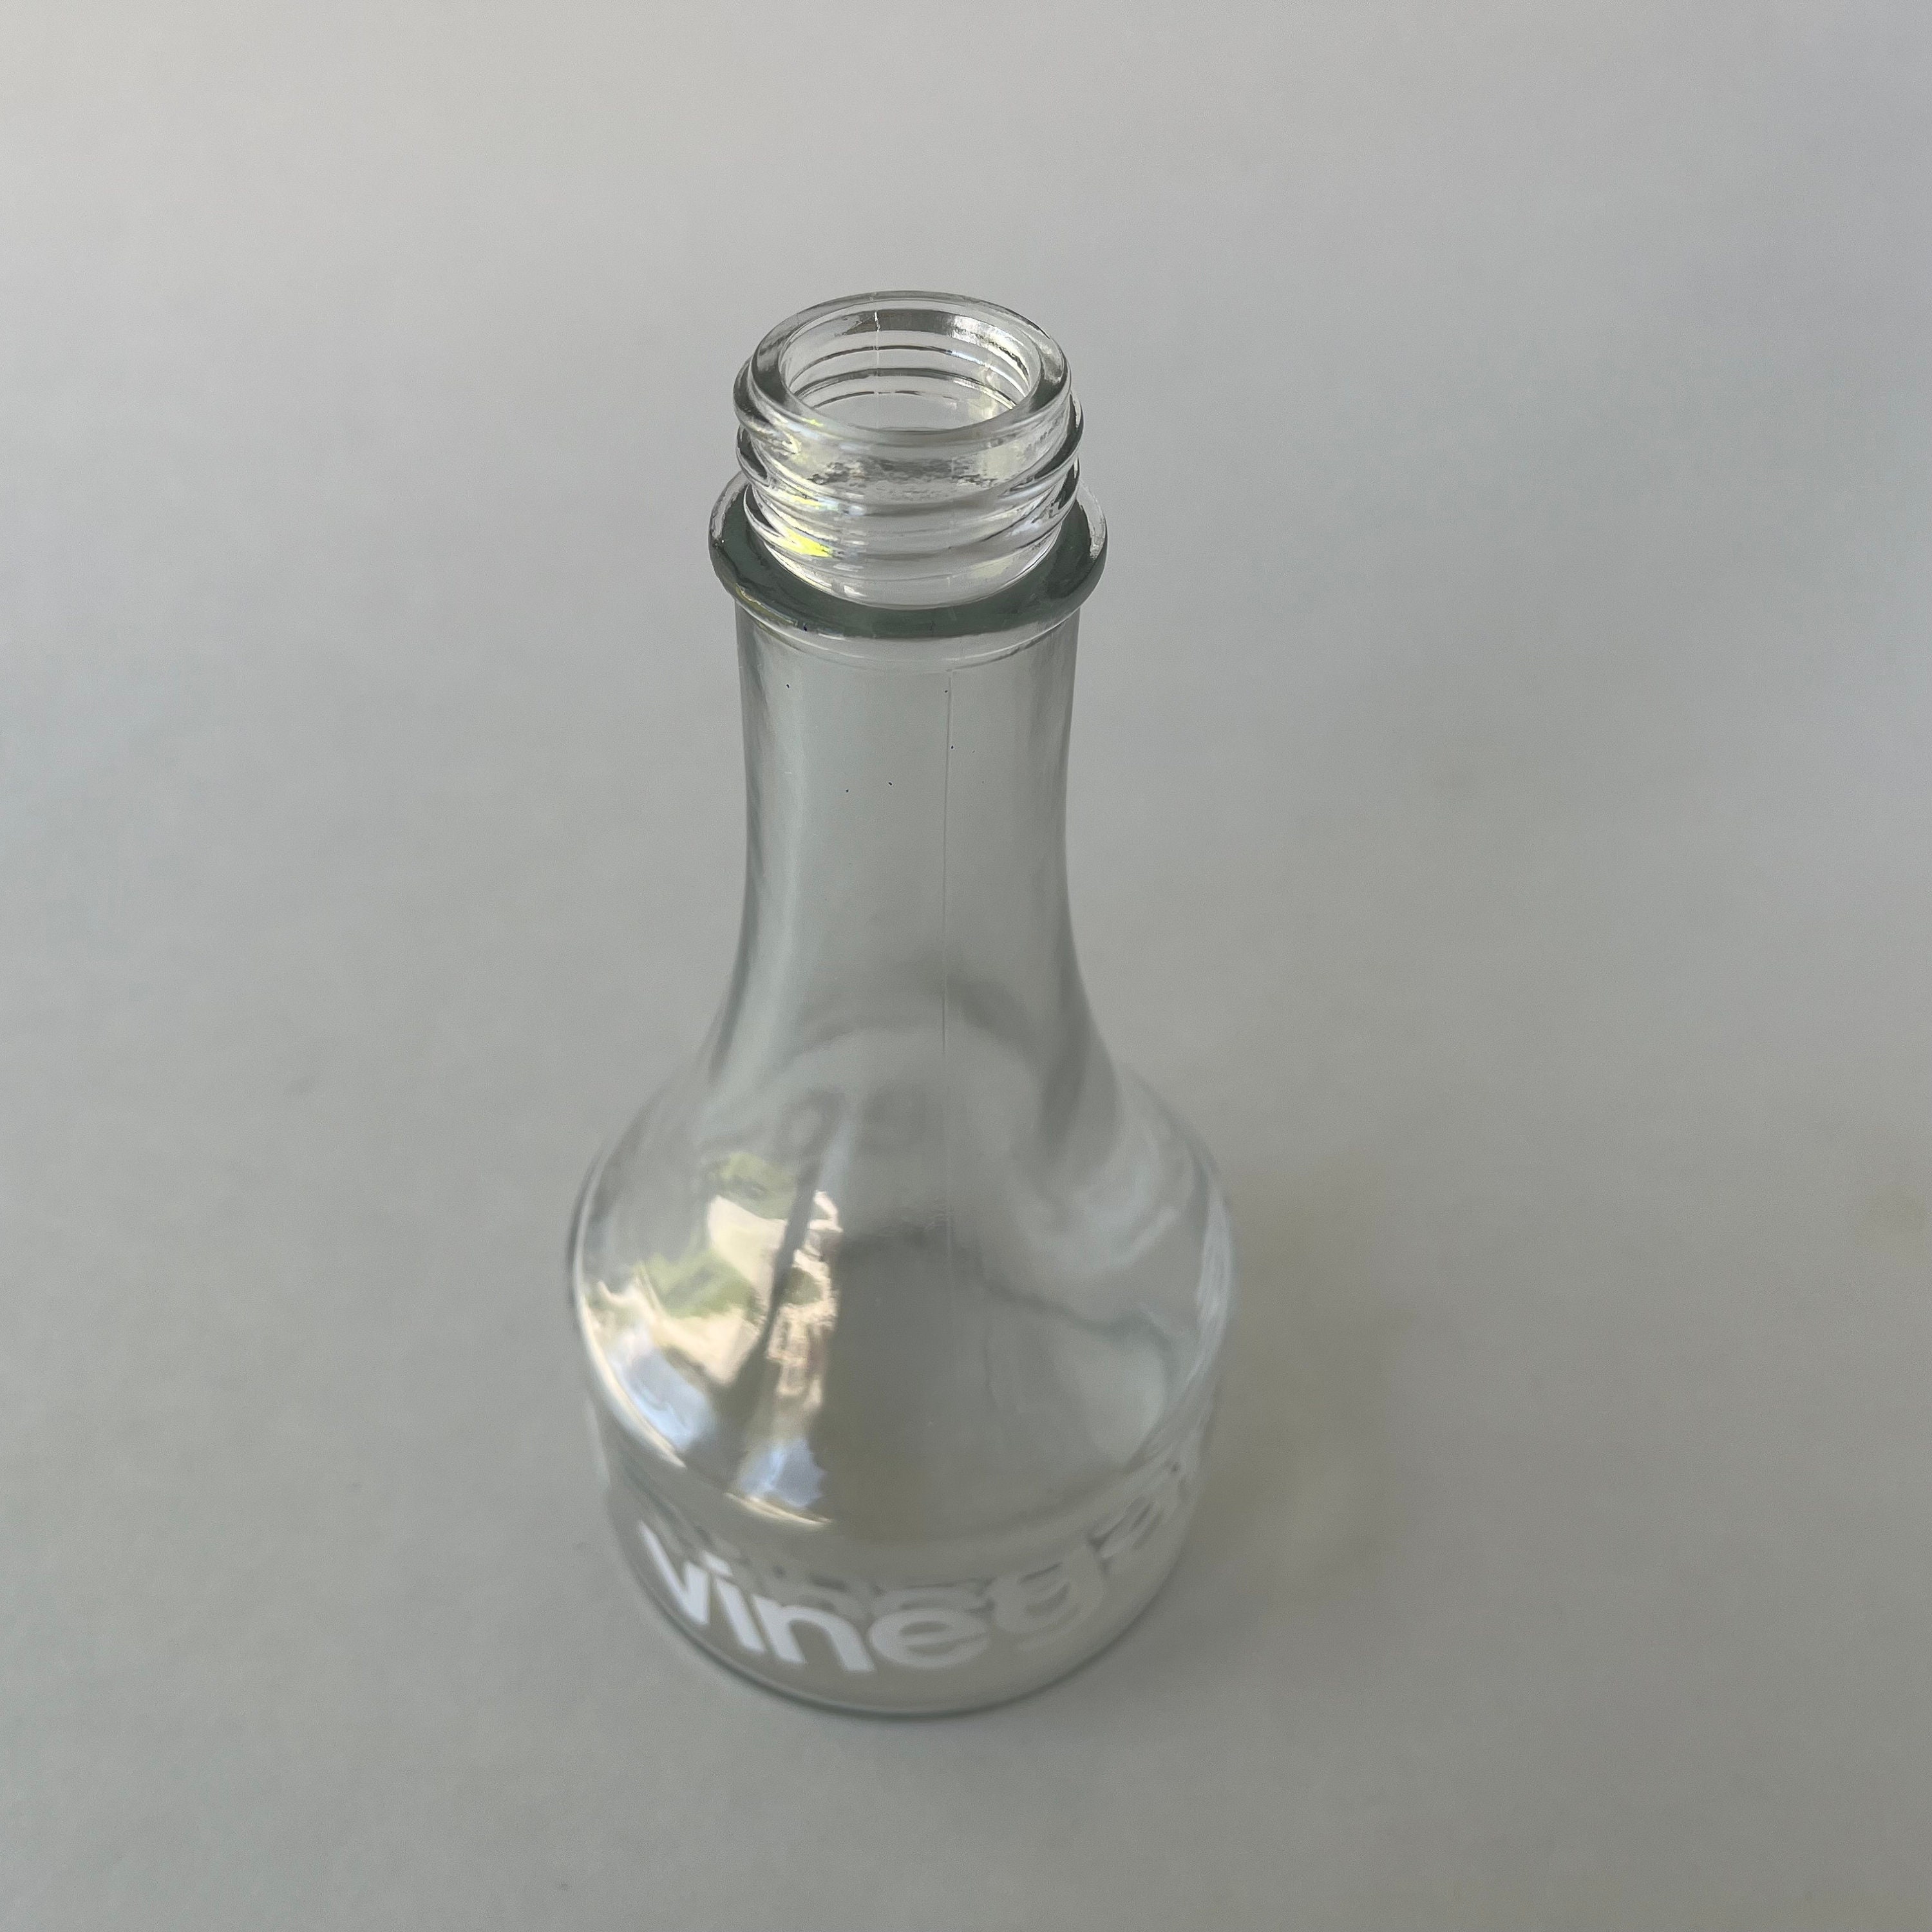 Gemco Olive Oil Bottle - Embossed